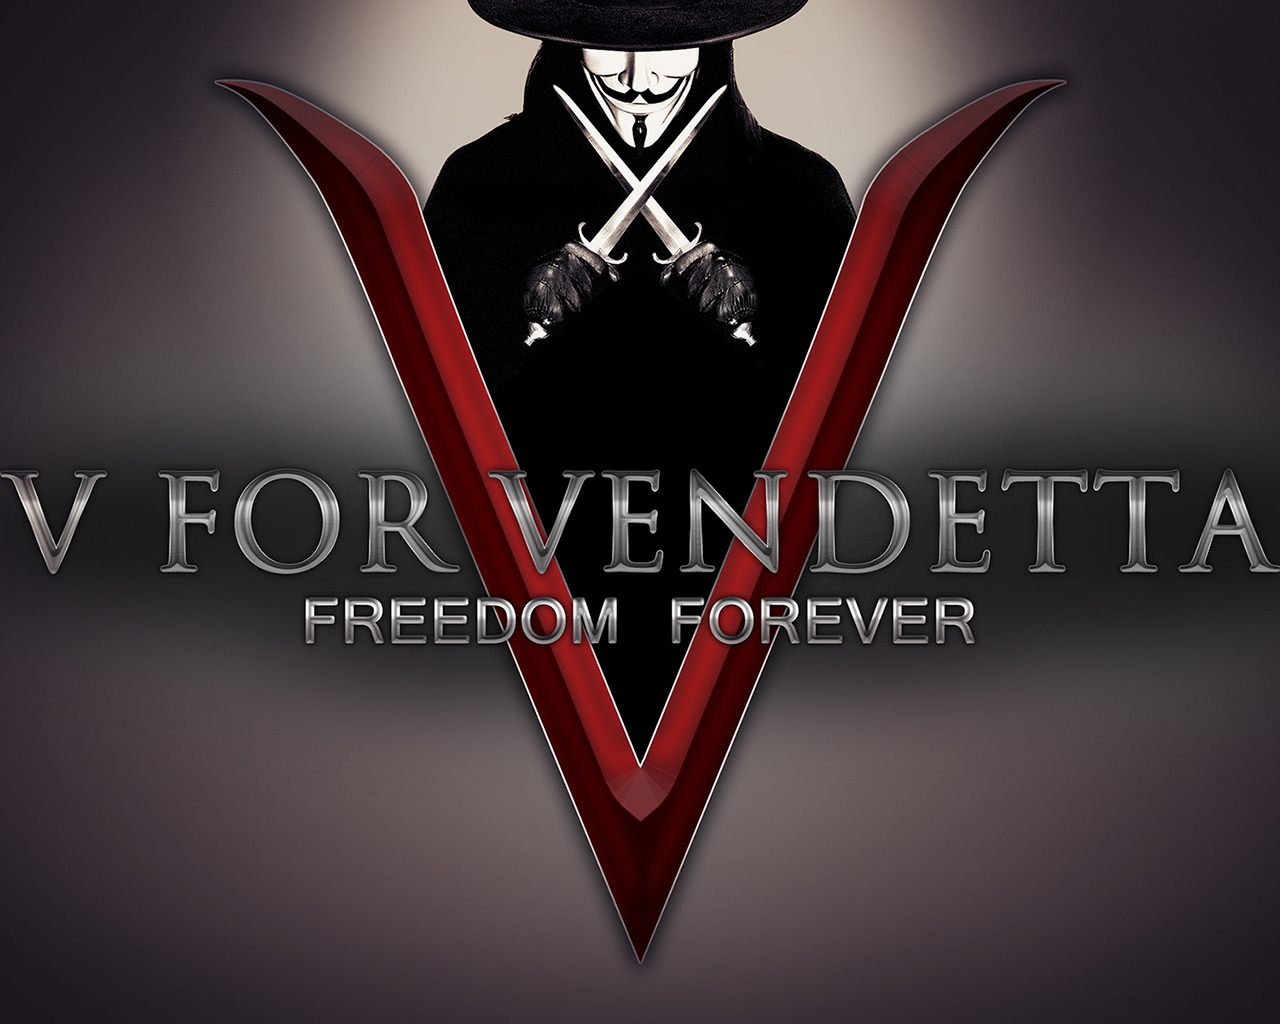 V for Vendetta Freedom Forever for 1280 x 1024 resolution